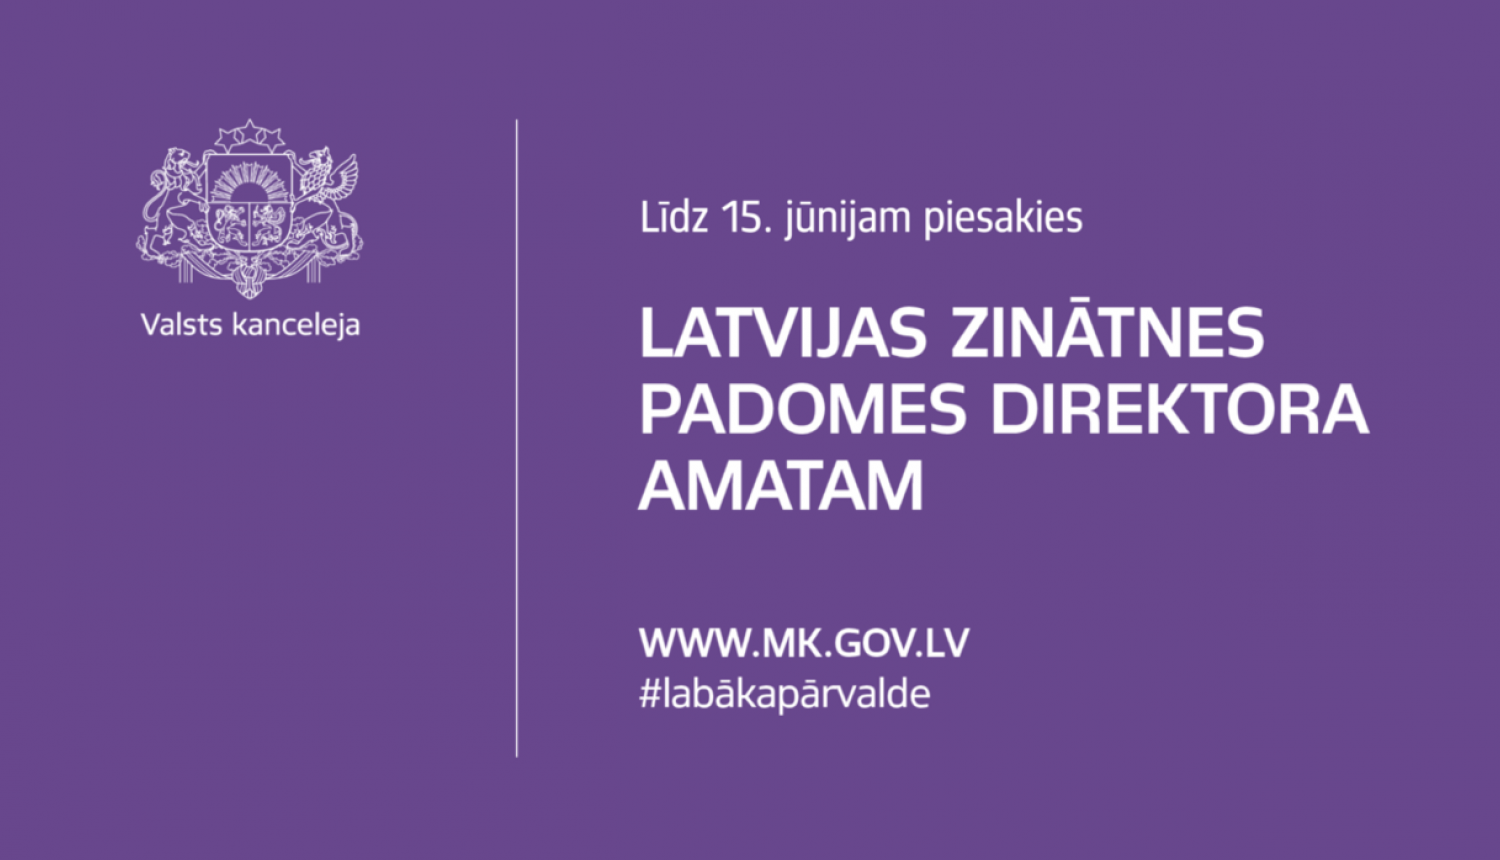 Konkursā uz Latvijas Zinātnes padomes direktoru amatu iespējams pieteikties līdz 15. jūnijam